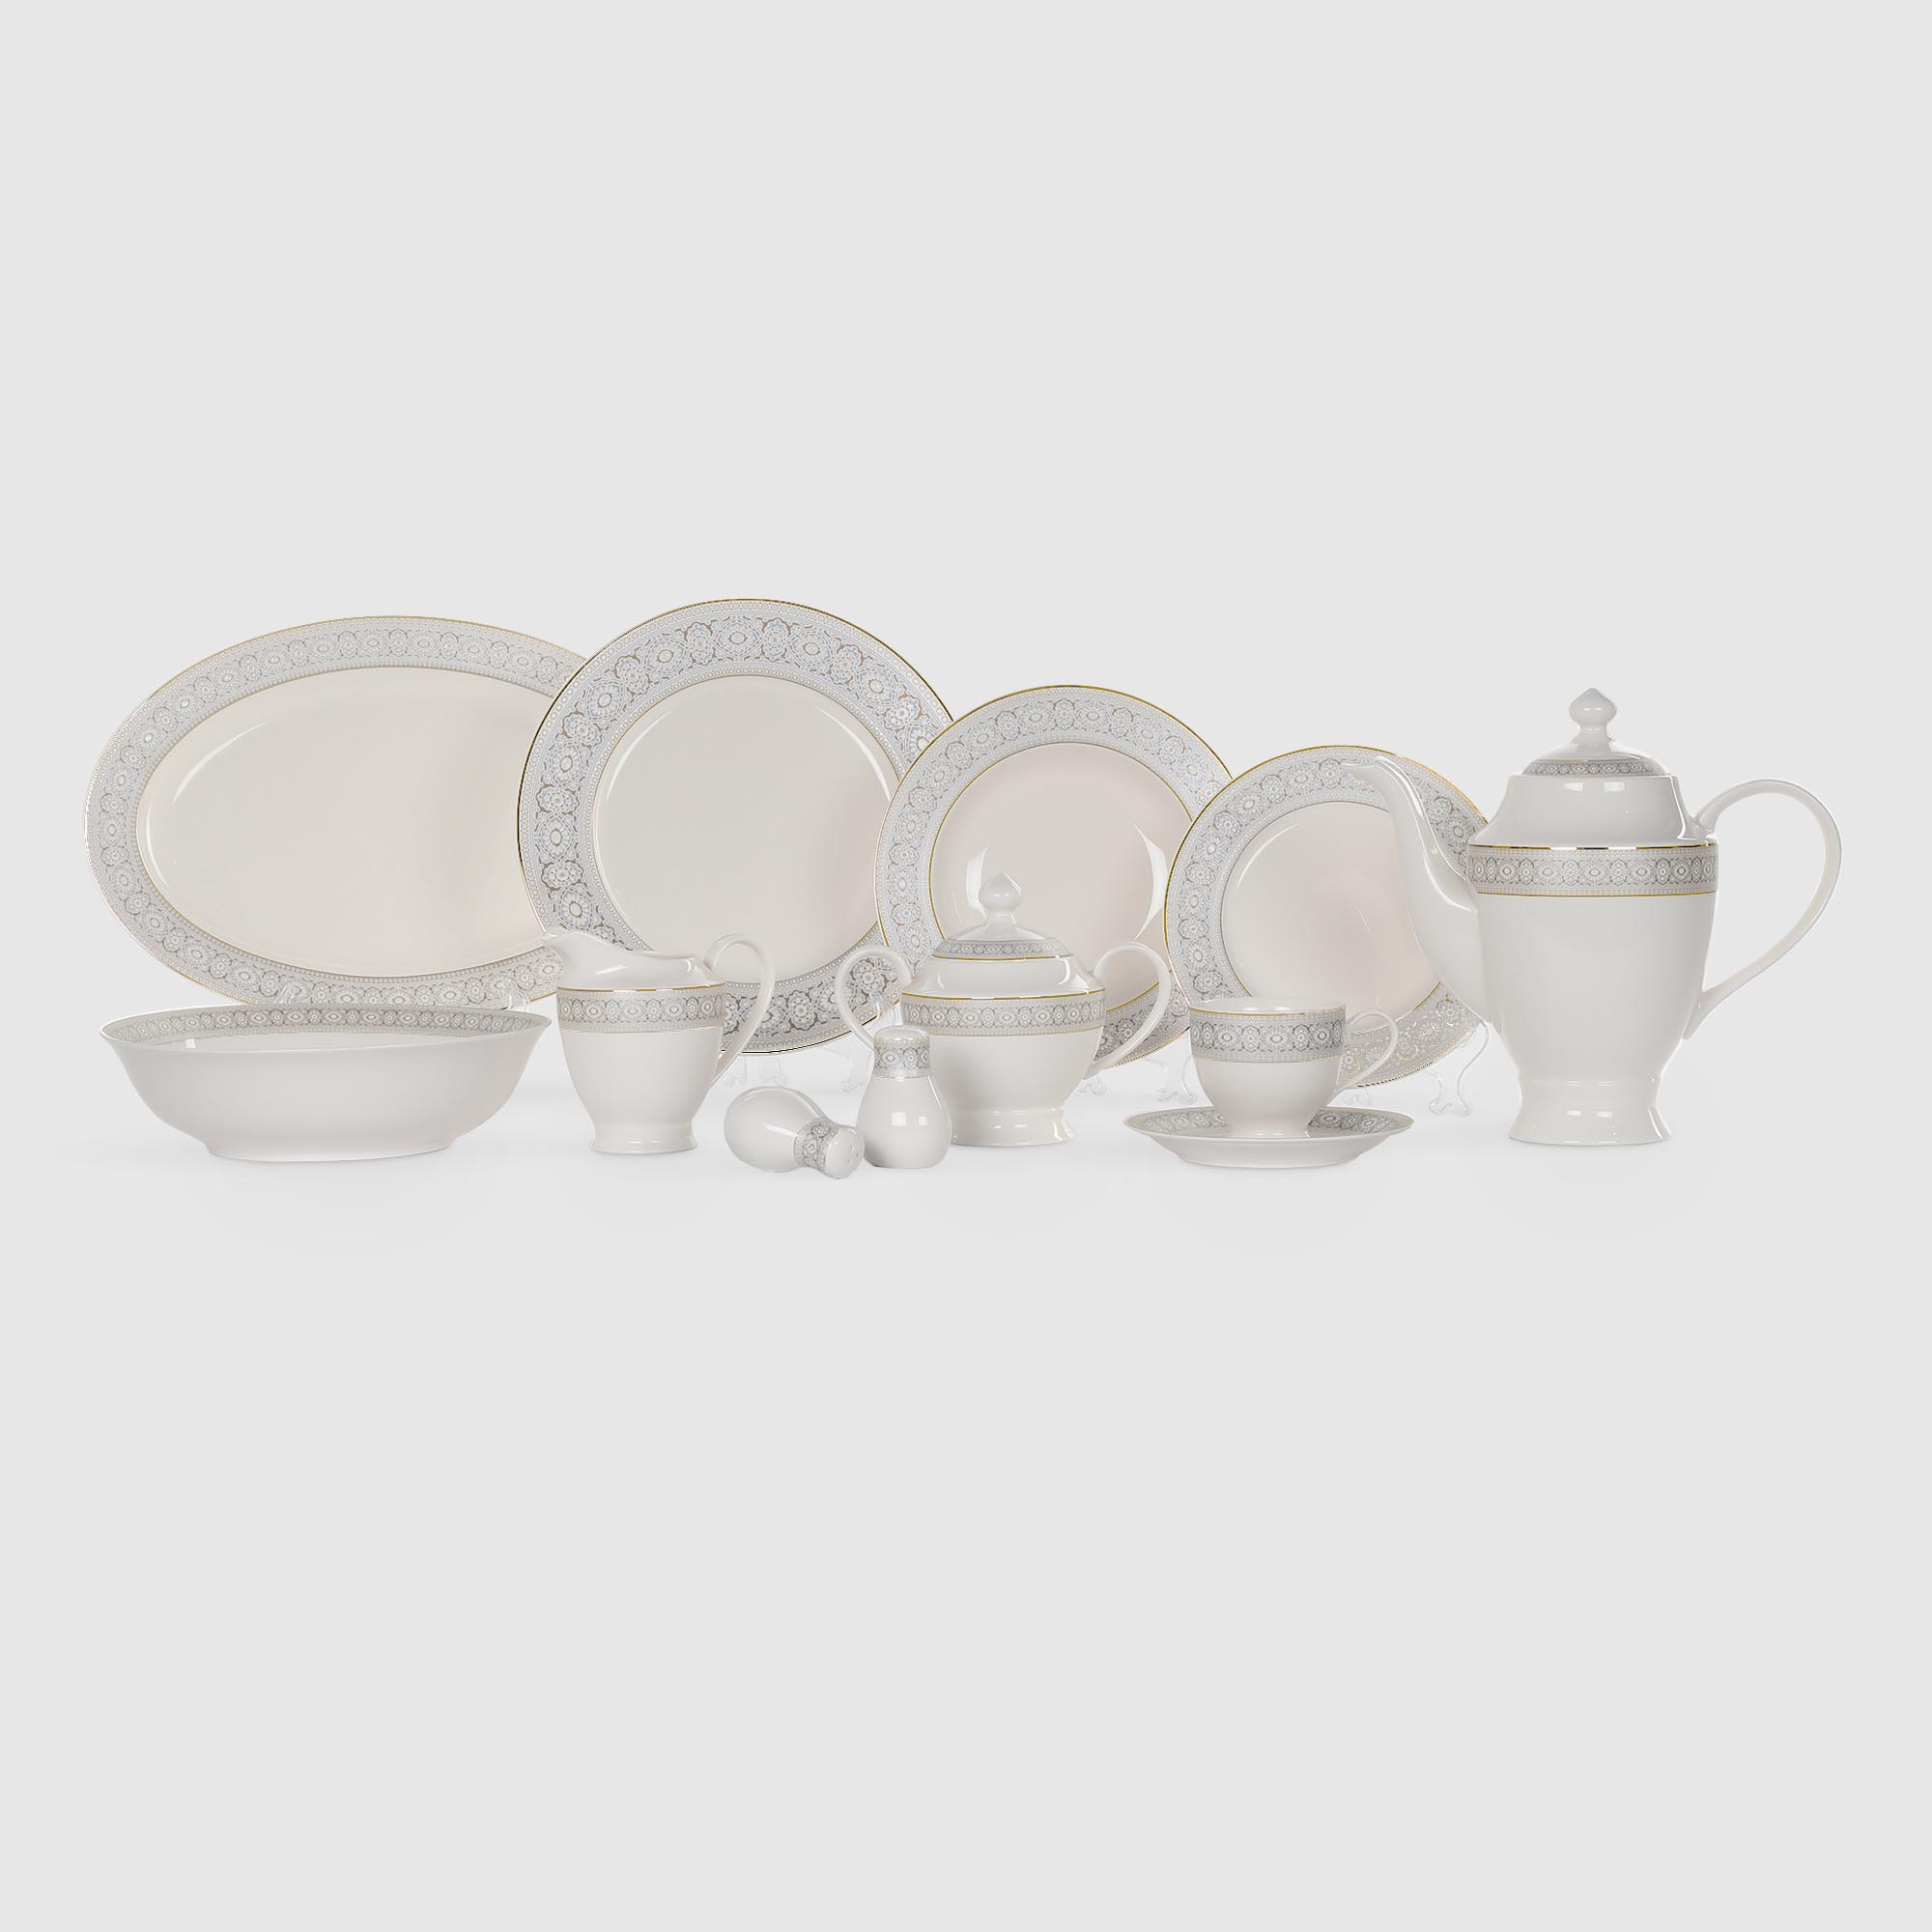 Сервиз Macbeth bone porcelain Brighton чайно-столовый 37 предметов на 6 персон сервиз столовый hankook prouna корсаж 25 предметов